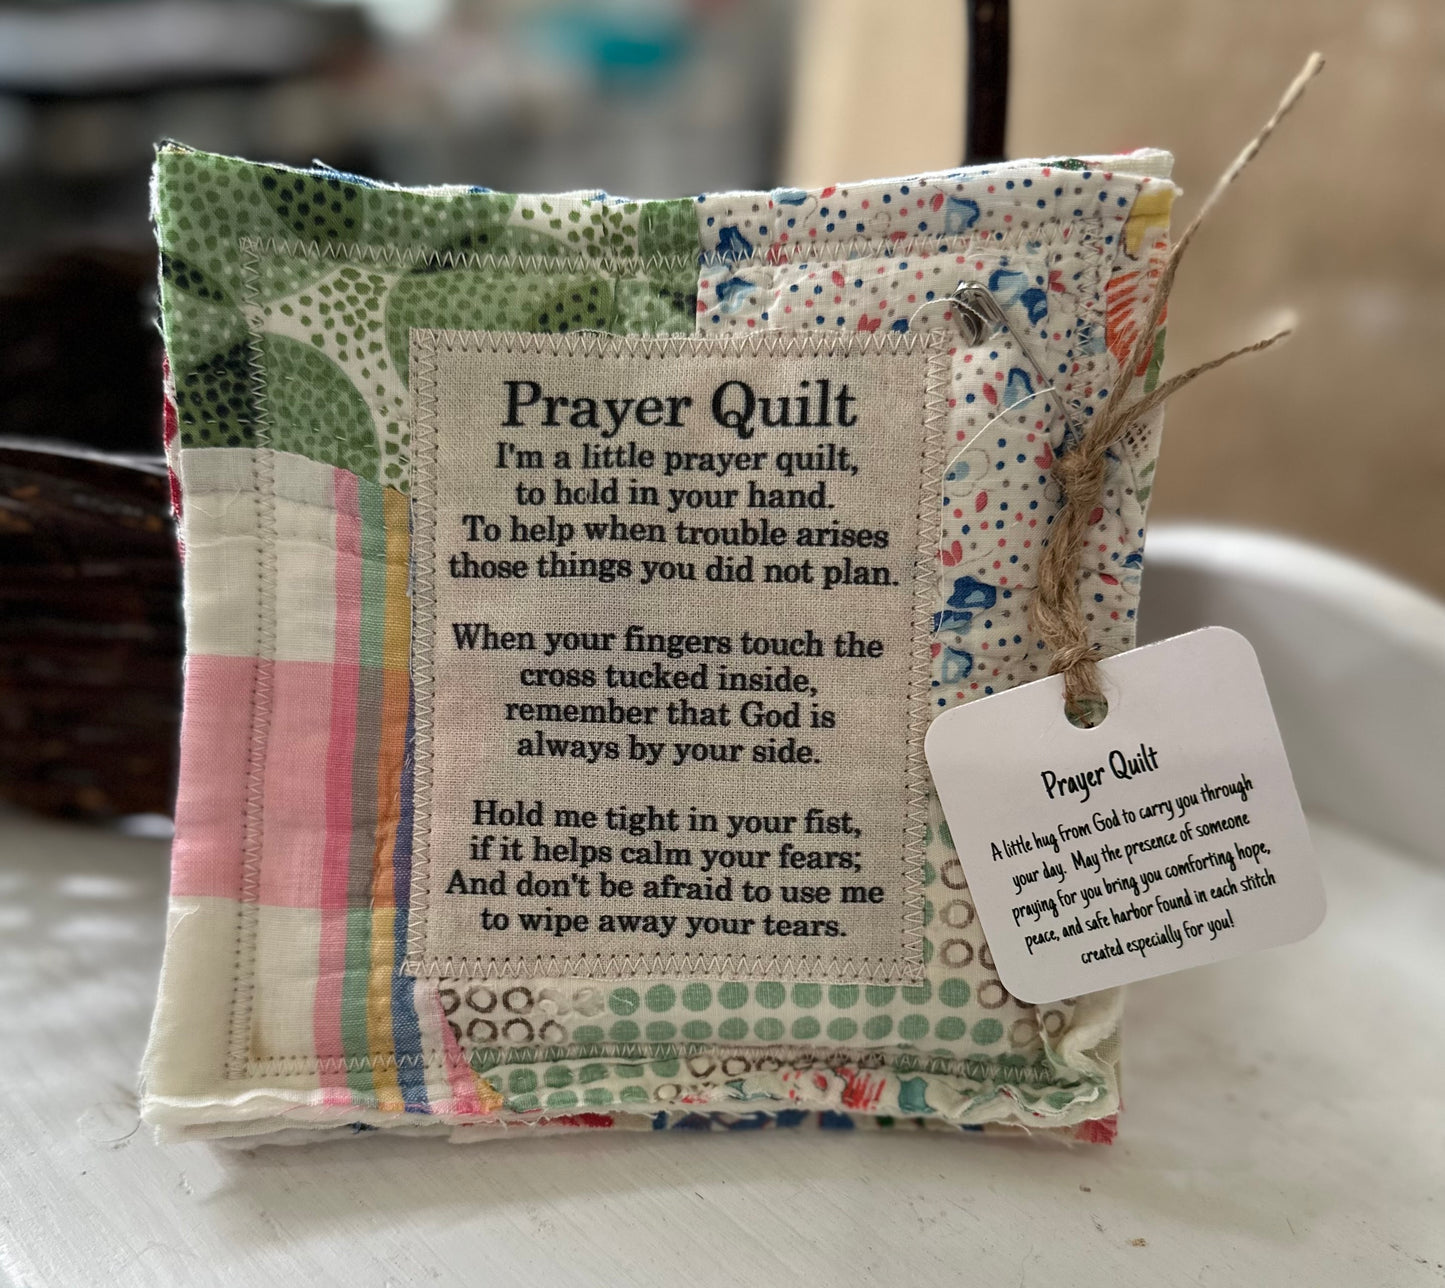 The Original Prayer Quilt